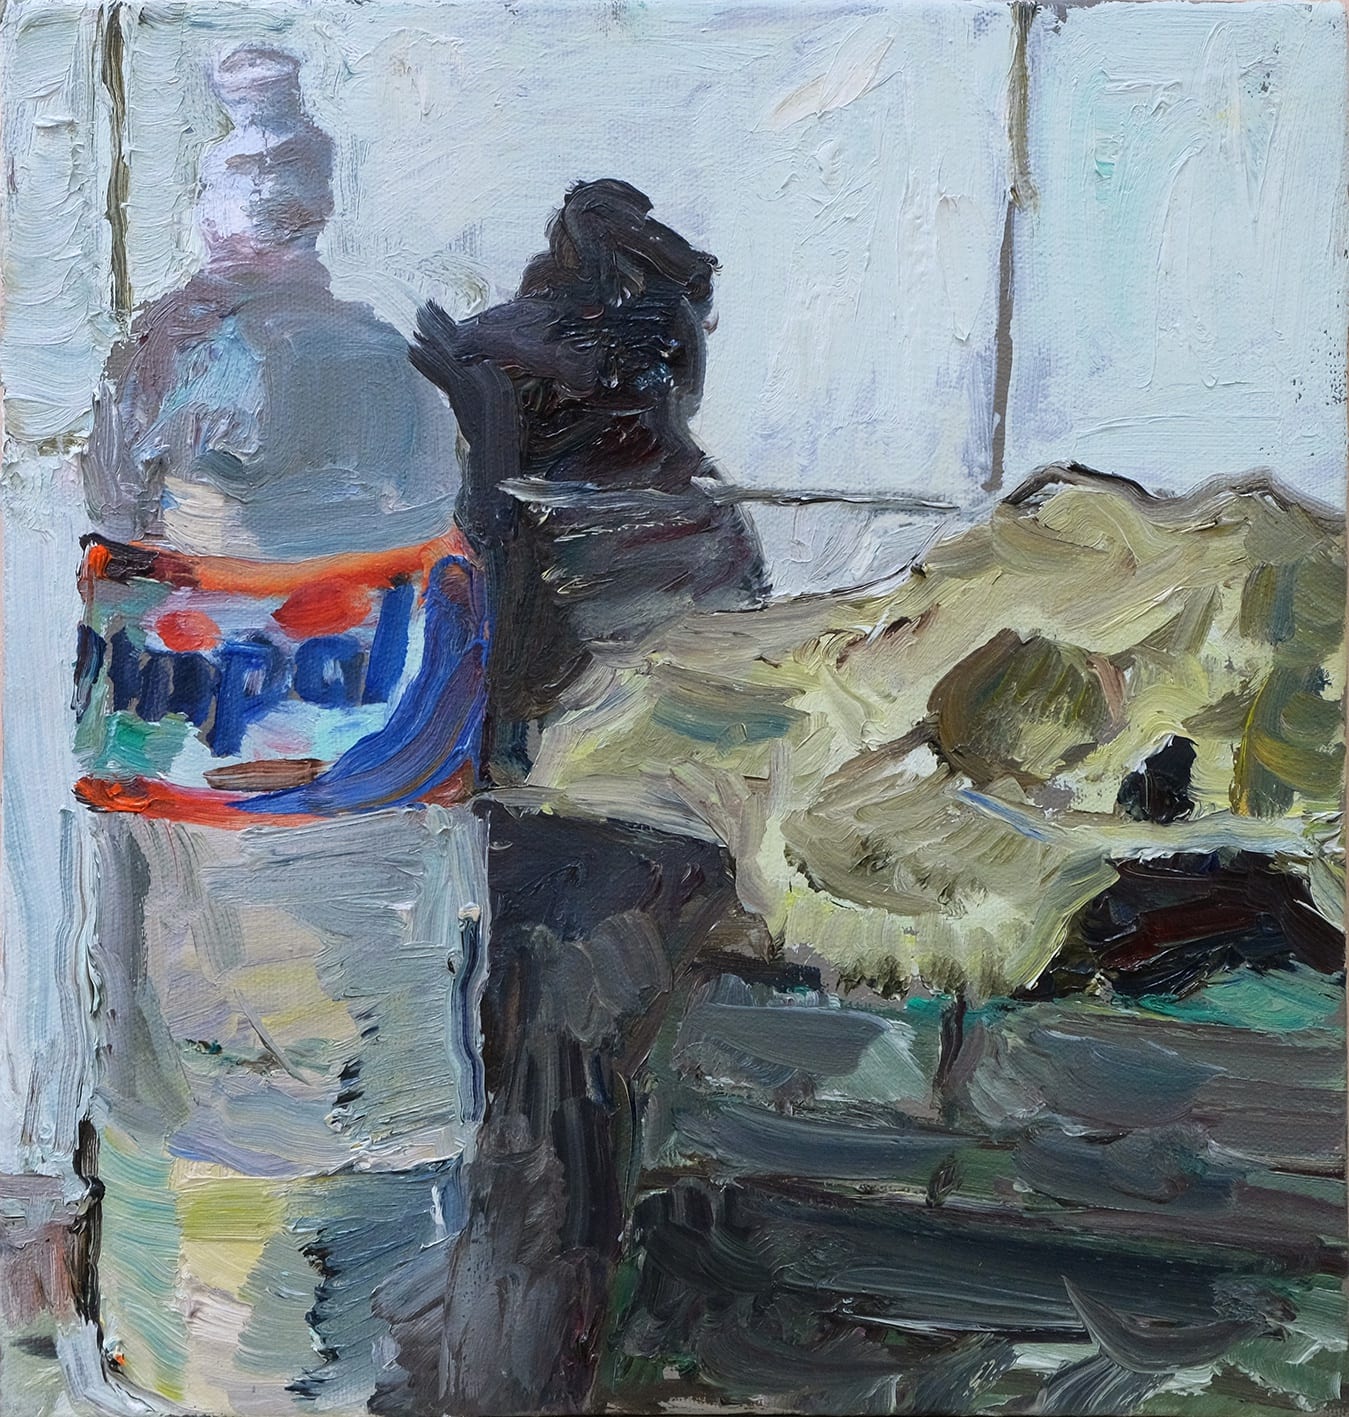 Eduardo Berliner, Azulejo [Tile], 2018